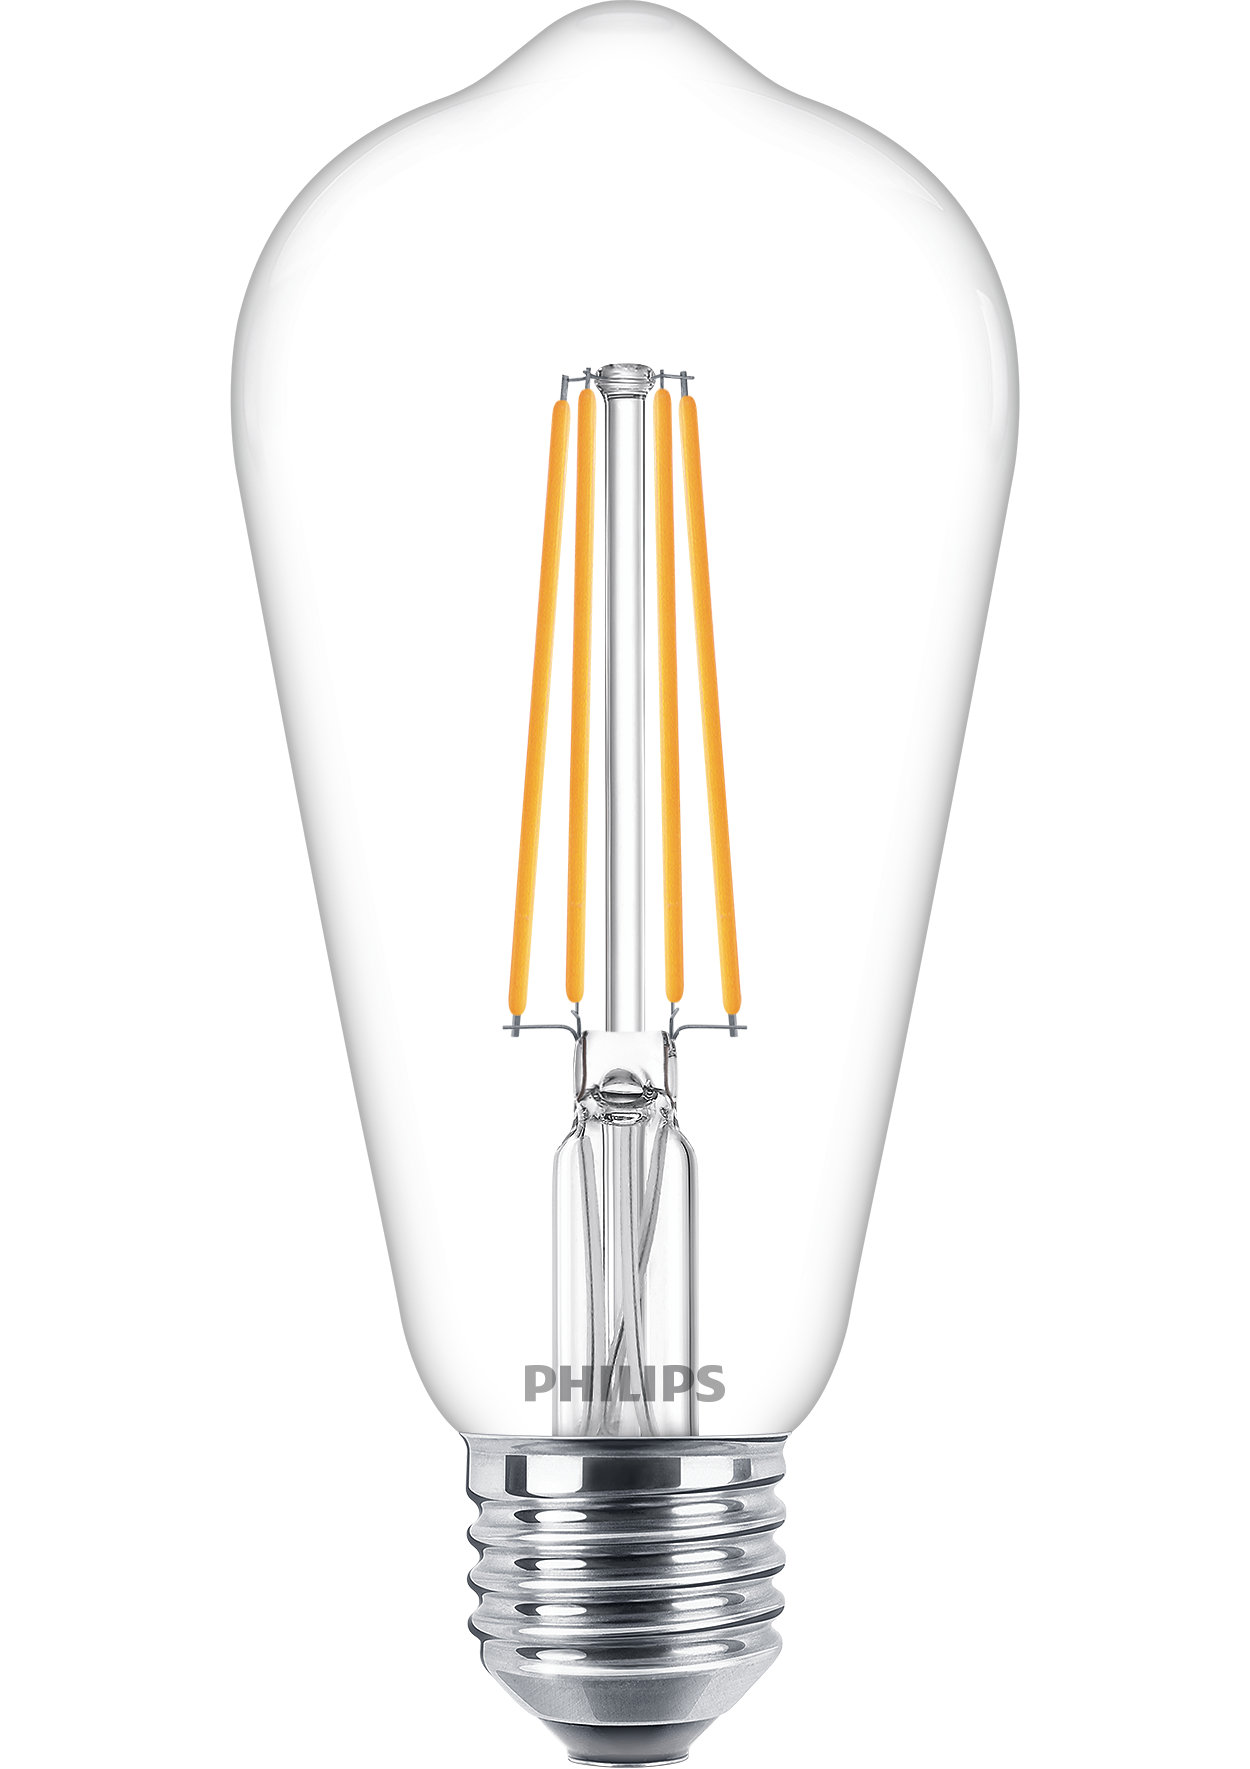 Ampolletas clásicas LED de filamento para iluminación decorativa